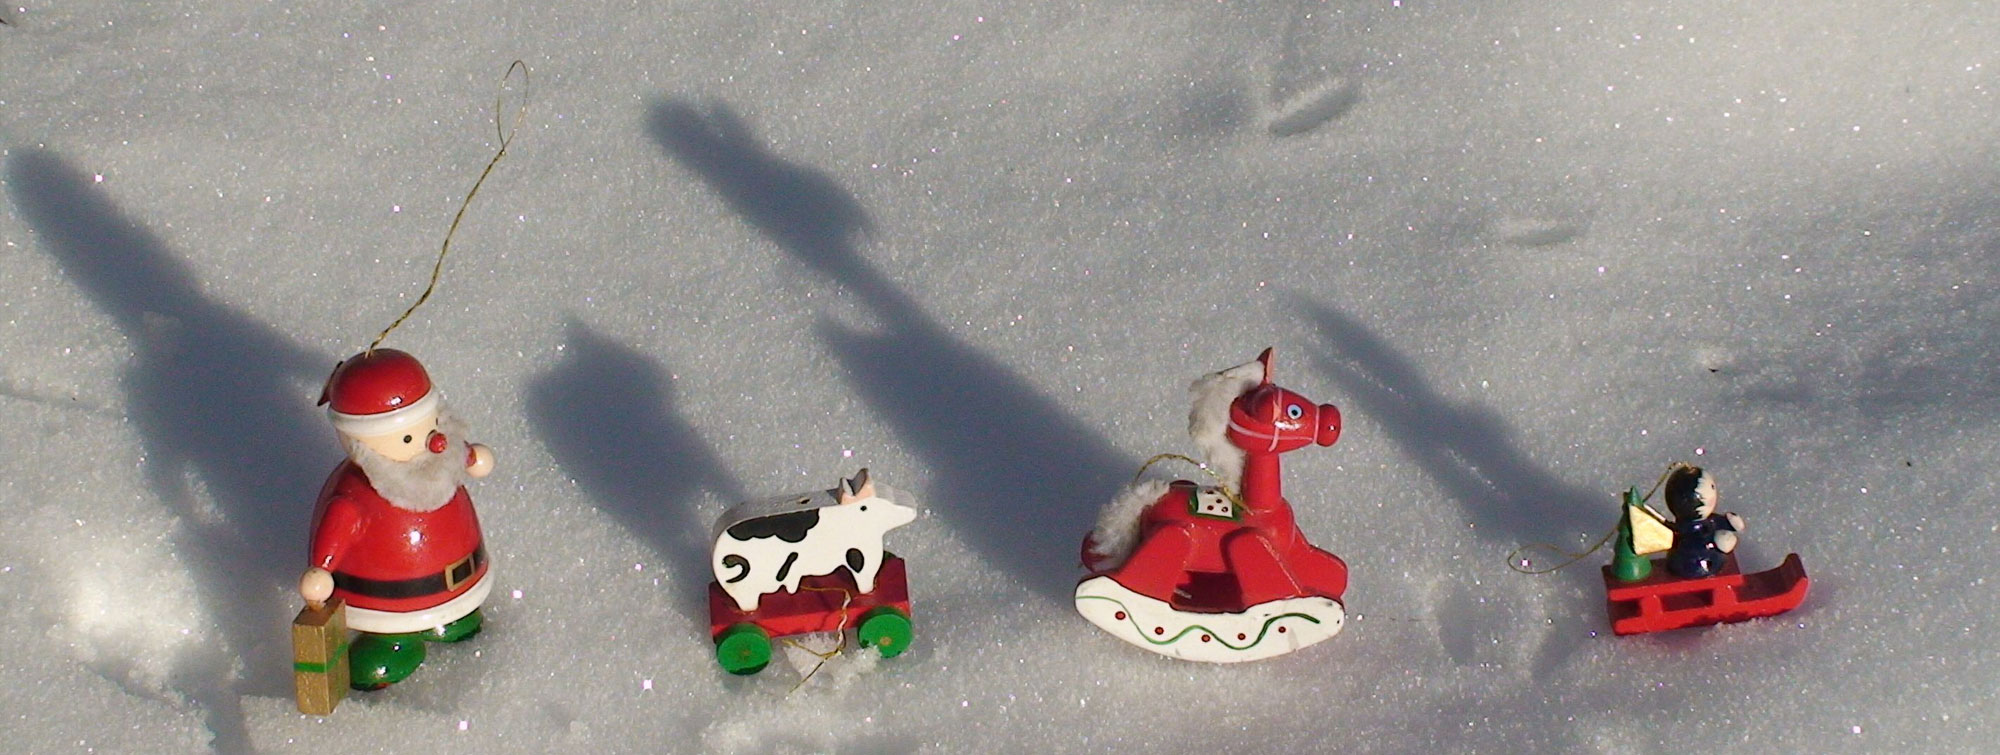 Gérard Jacquemin aime raconter des histoires photographiques. Ici, promenade du père noël et ses amis sur la neige.